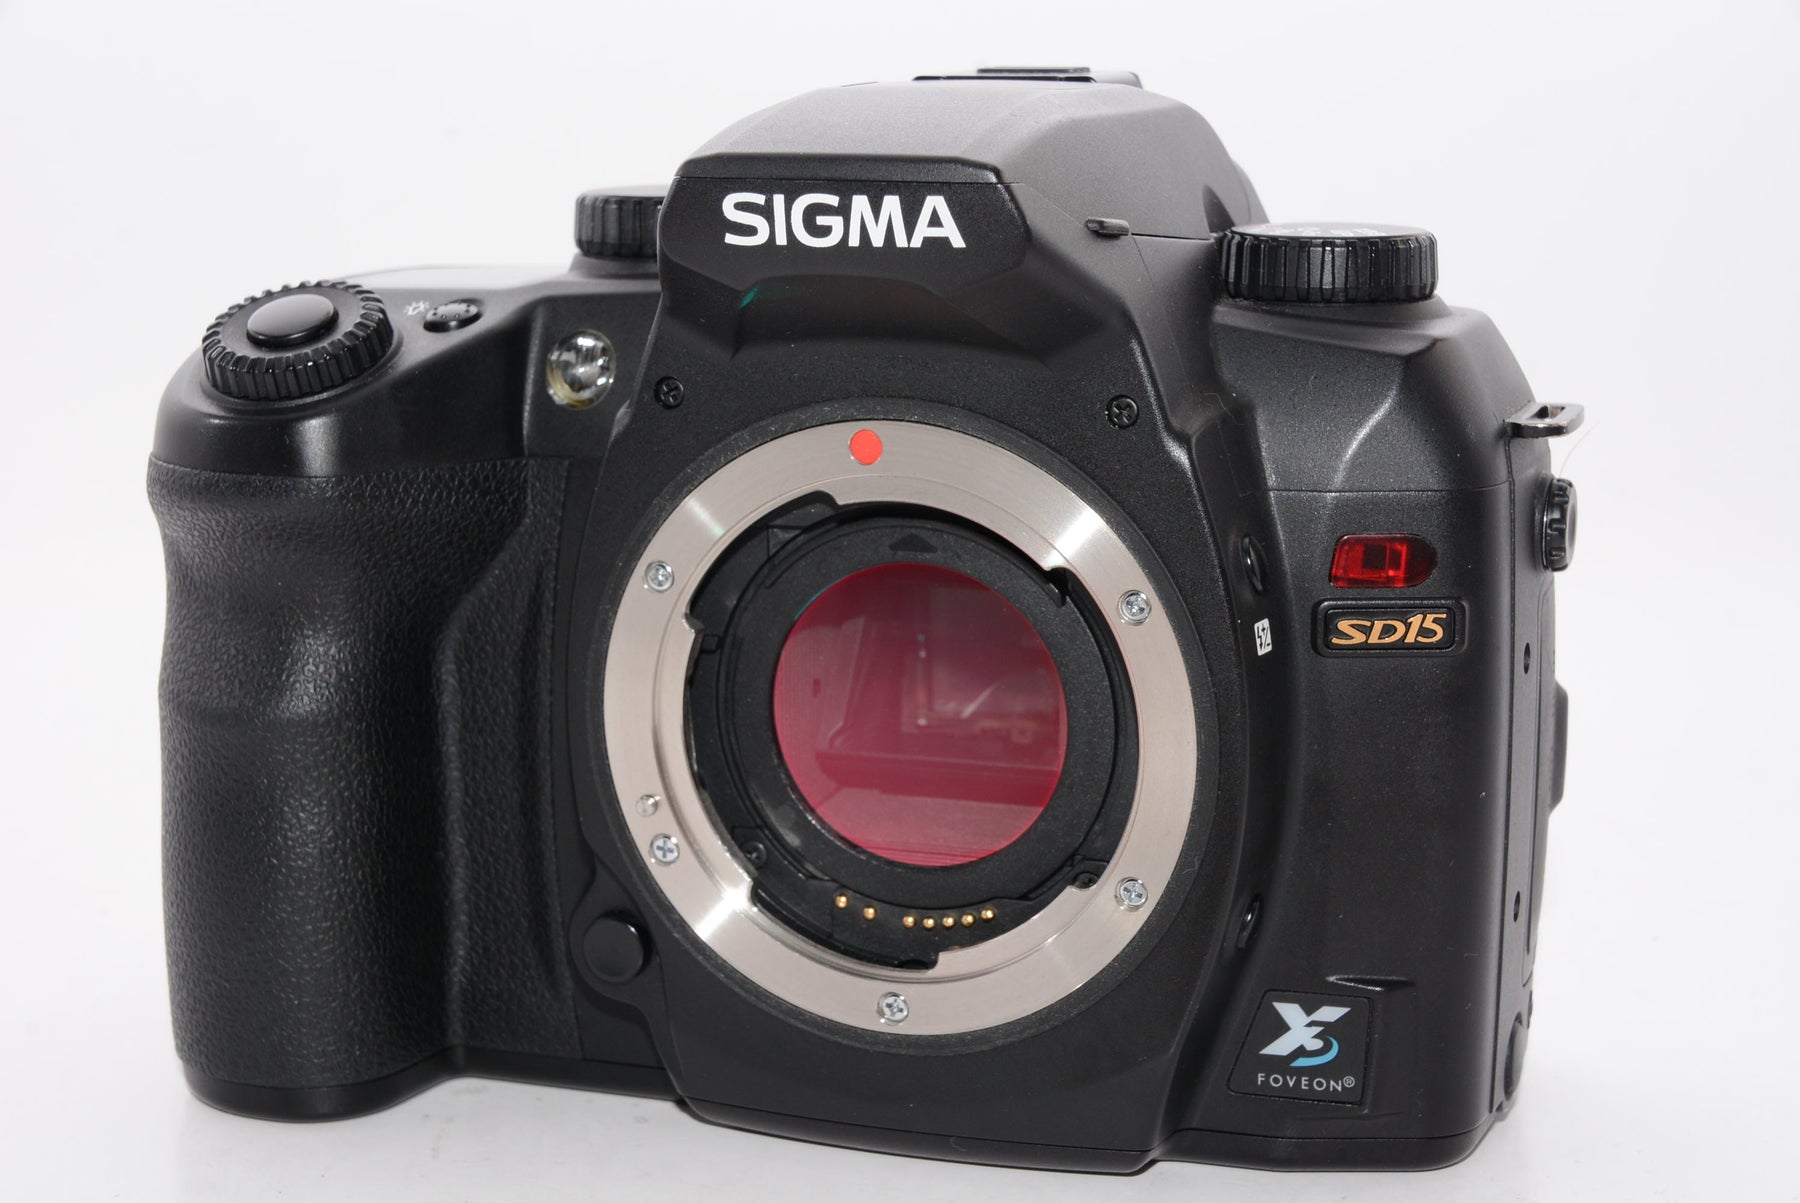 【外観特上級】シグマ デジタル一眼レフカメラ SD15 ボディ SD15 Body